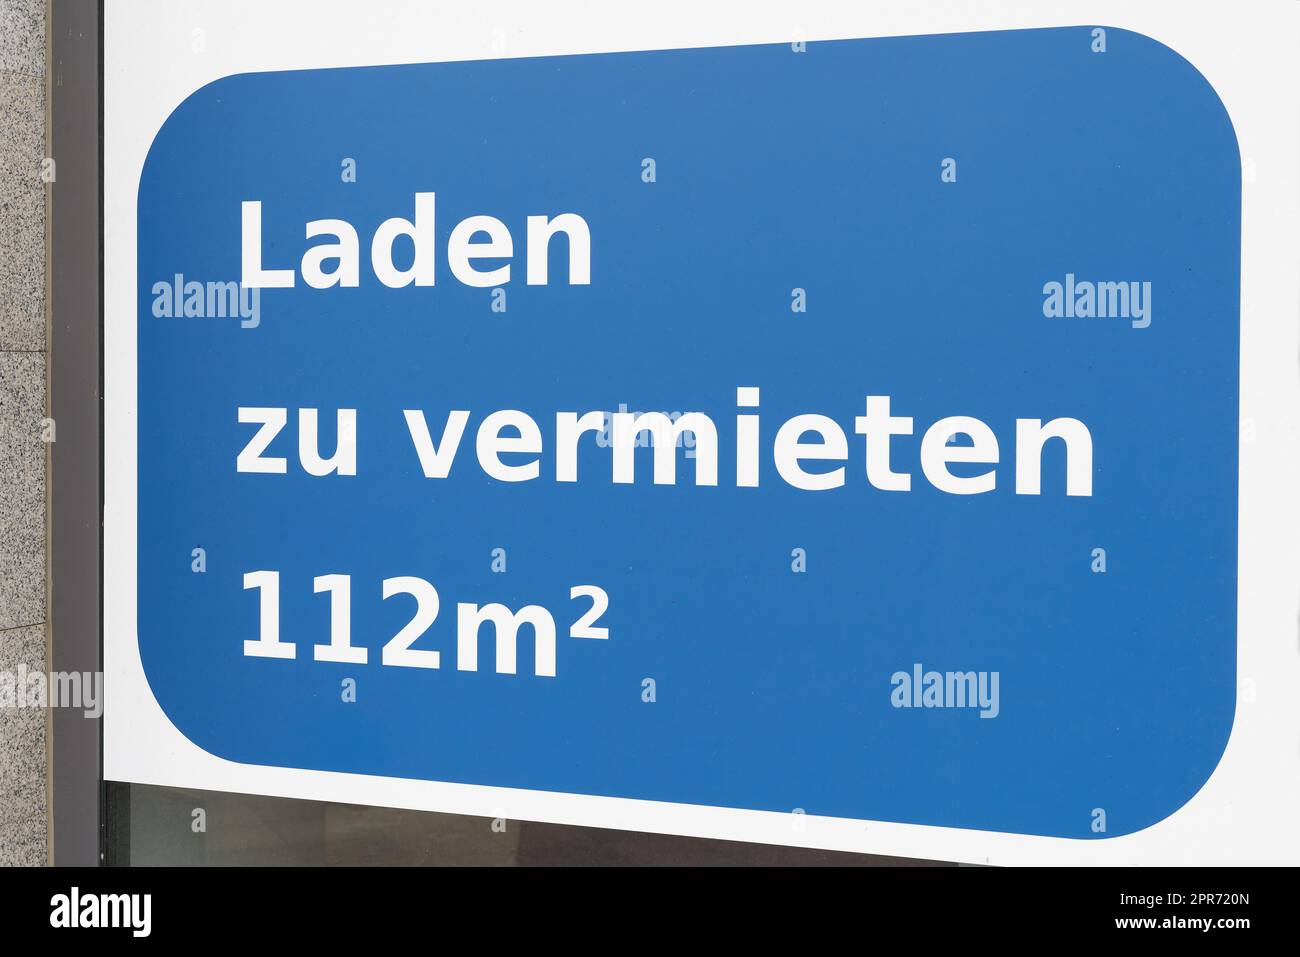 Firma sul negozio finestra in Germania dicendo Laden zu vermieten. Traduzione: Negozio in affitto Foto Stock